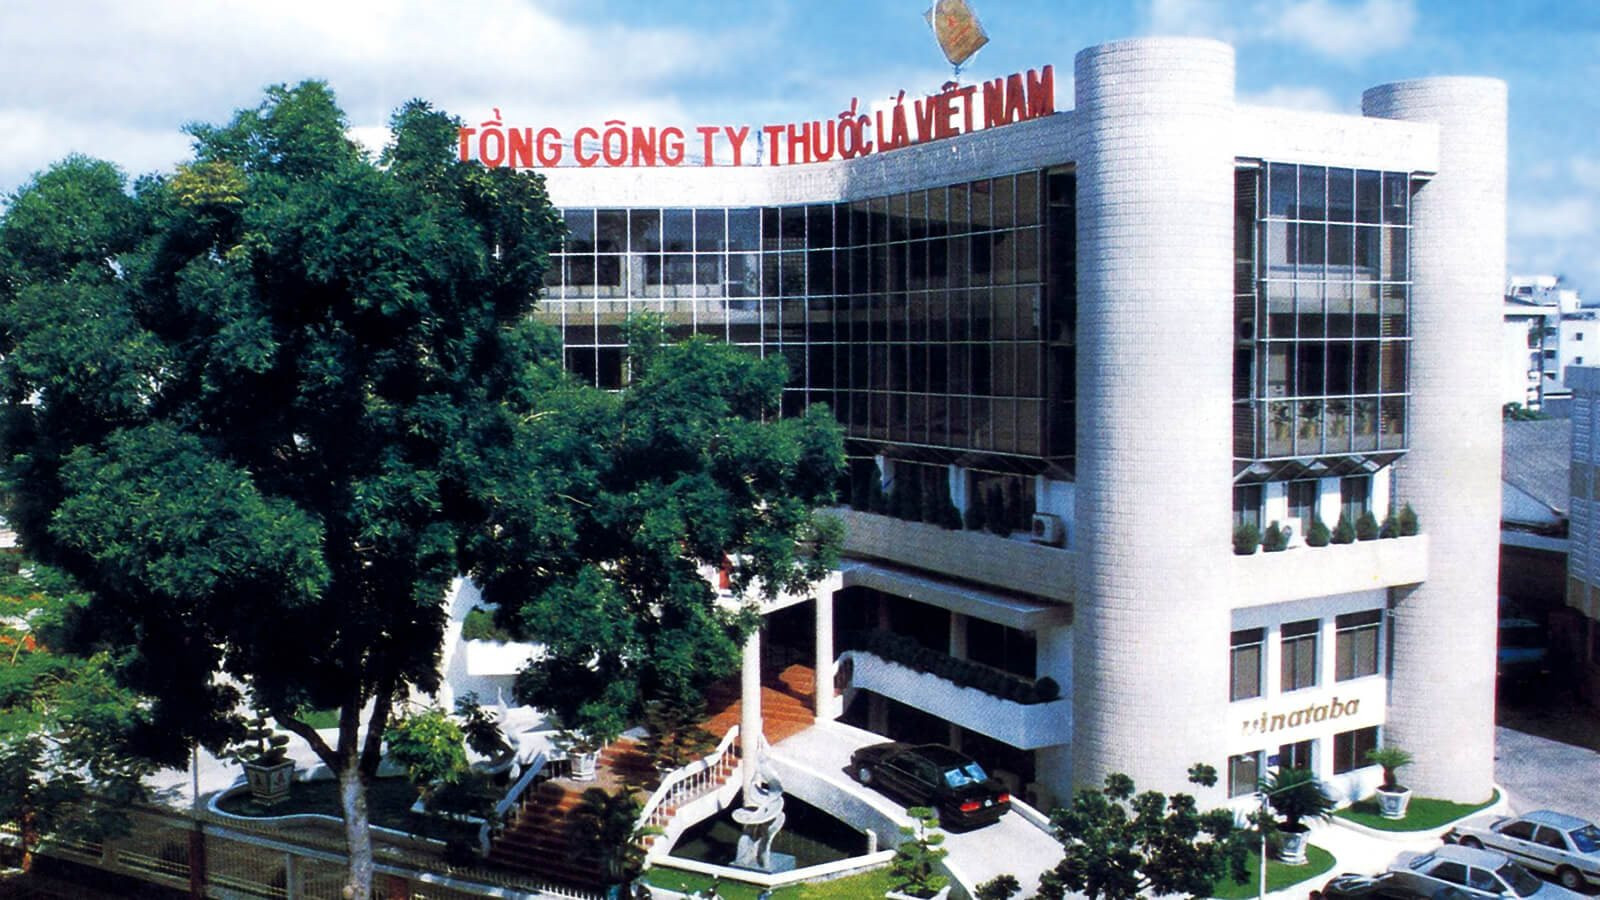 Đại gia thuốc lá lớn nhất Việt Nam đang kinh doanh ra sao?